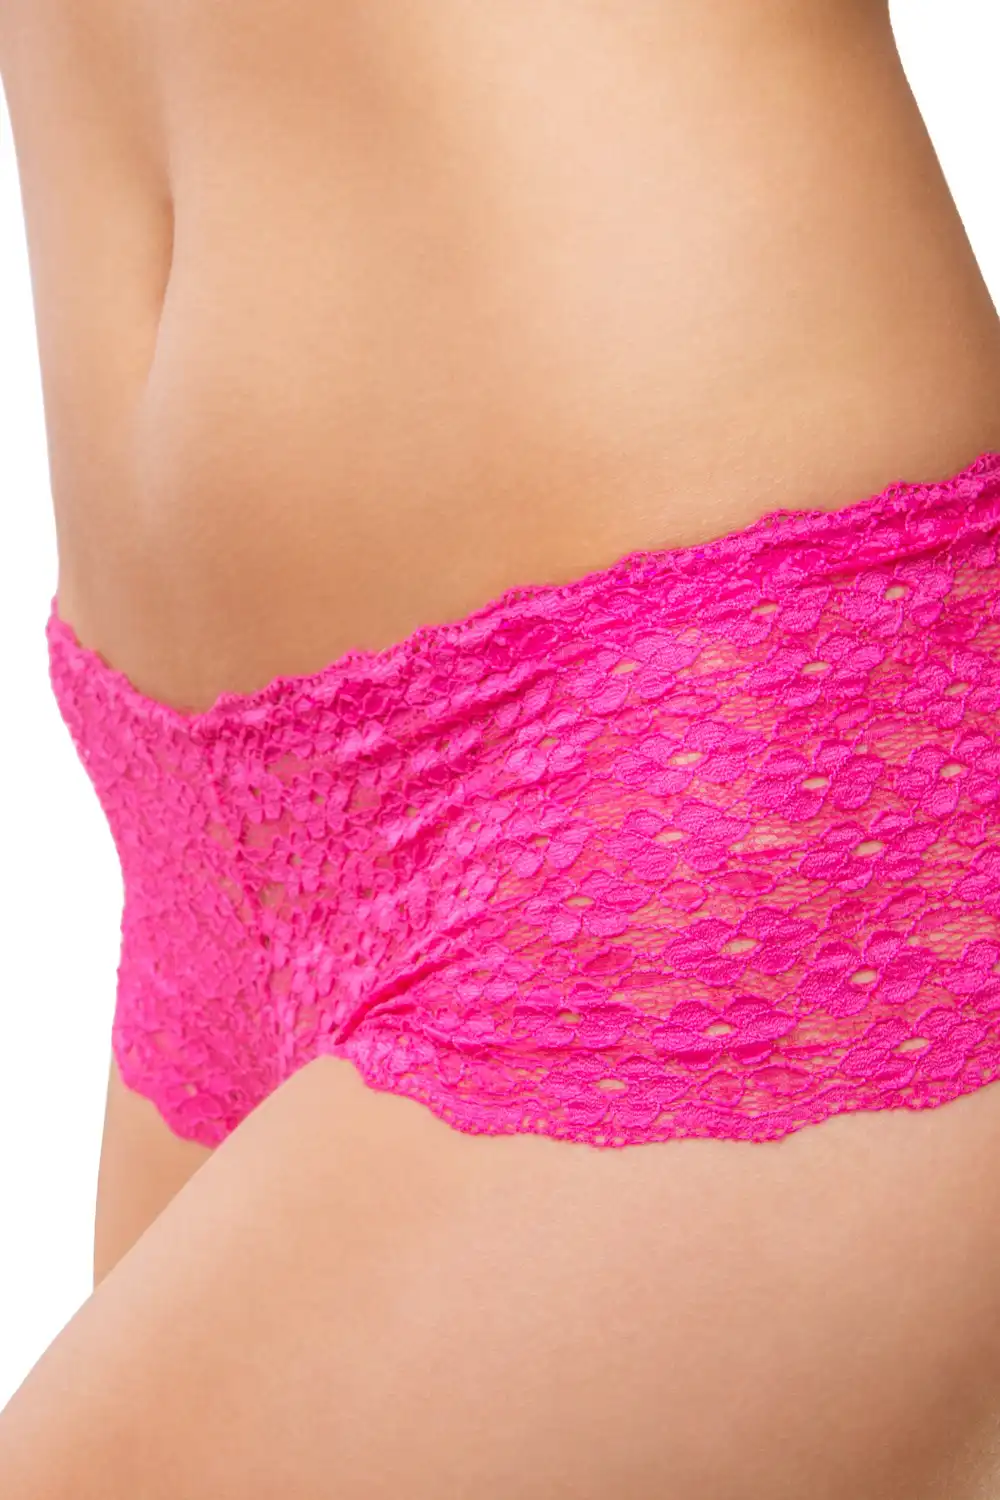 Woman in pink lace underwear